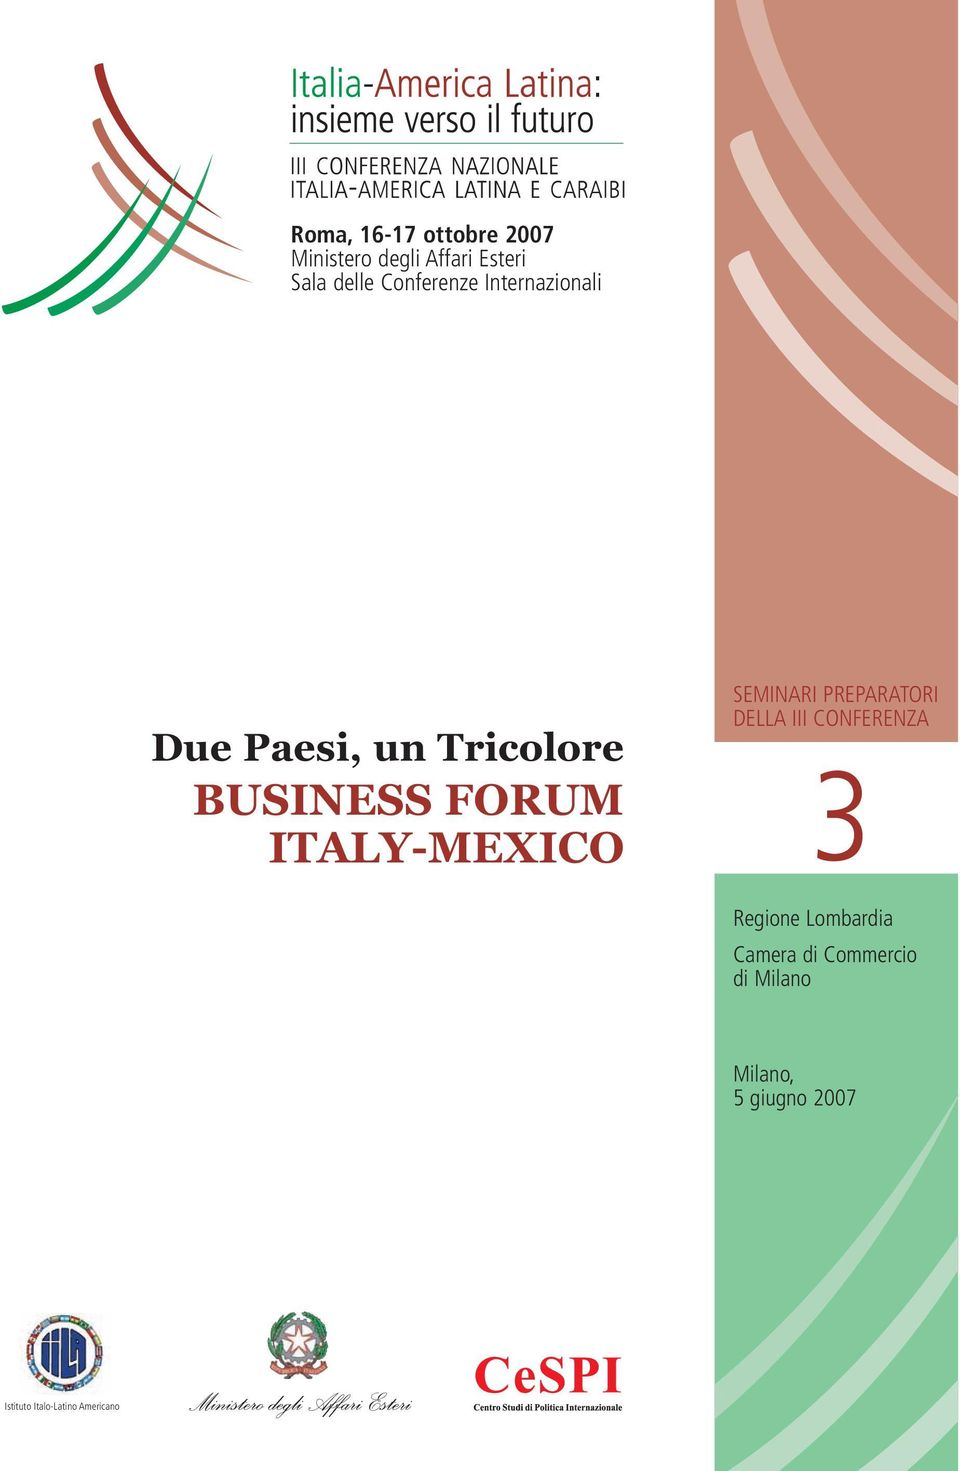 ITALY-MEXICO SEMINARI PREPARATORI DELLA III CONFERENZA 3 Regione